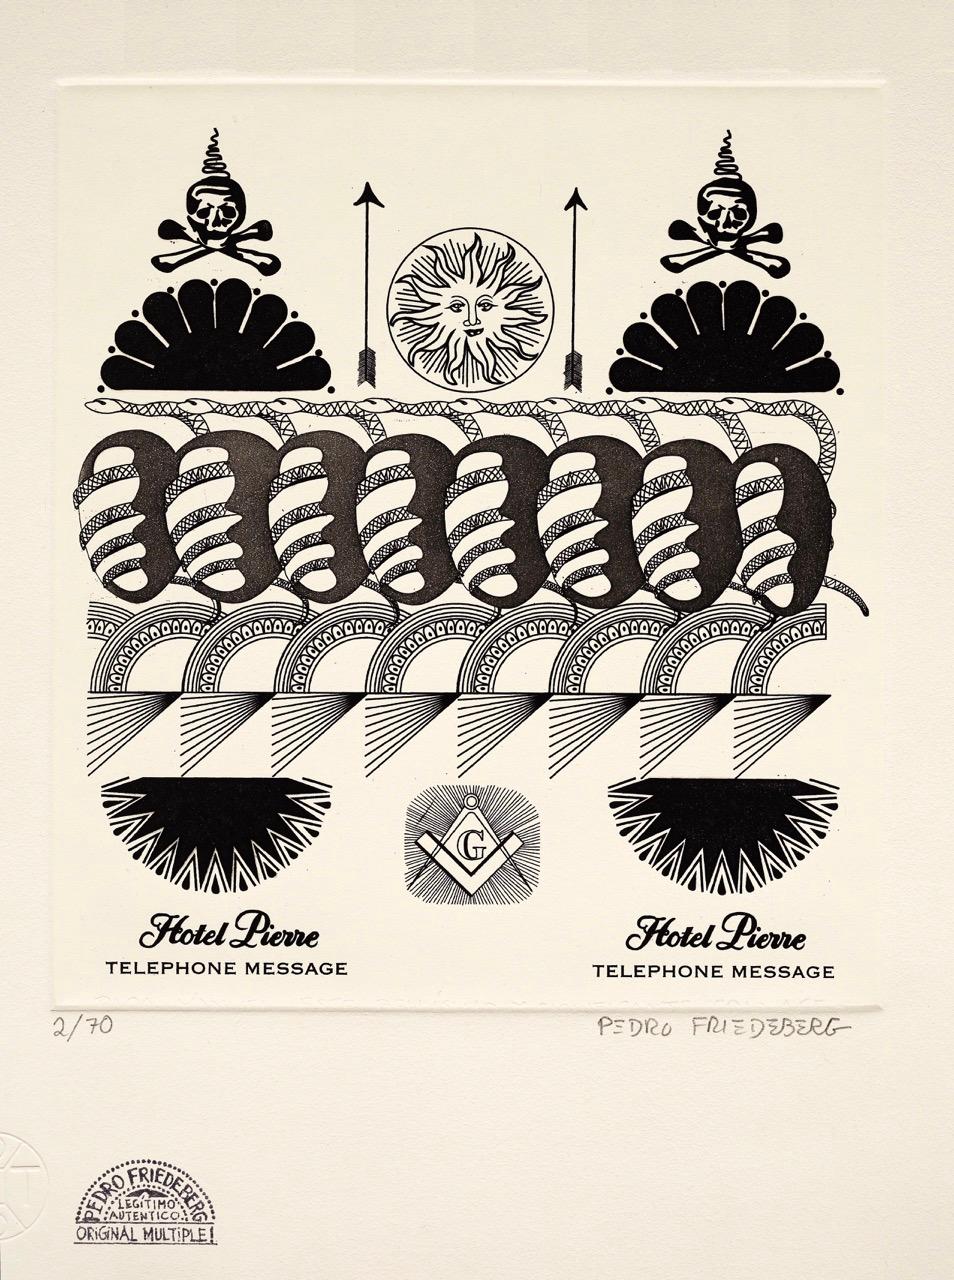 Still-Life Print Pedro Friedeberg - "Hôtel Pierre" gravure contemporaine surréaliste en noir et blanc soleil et crânes. 